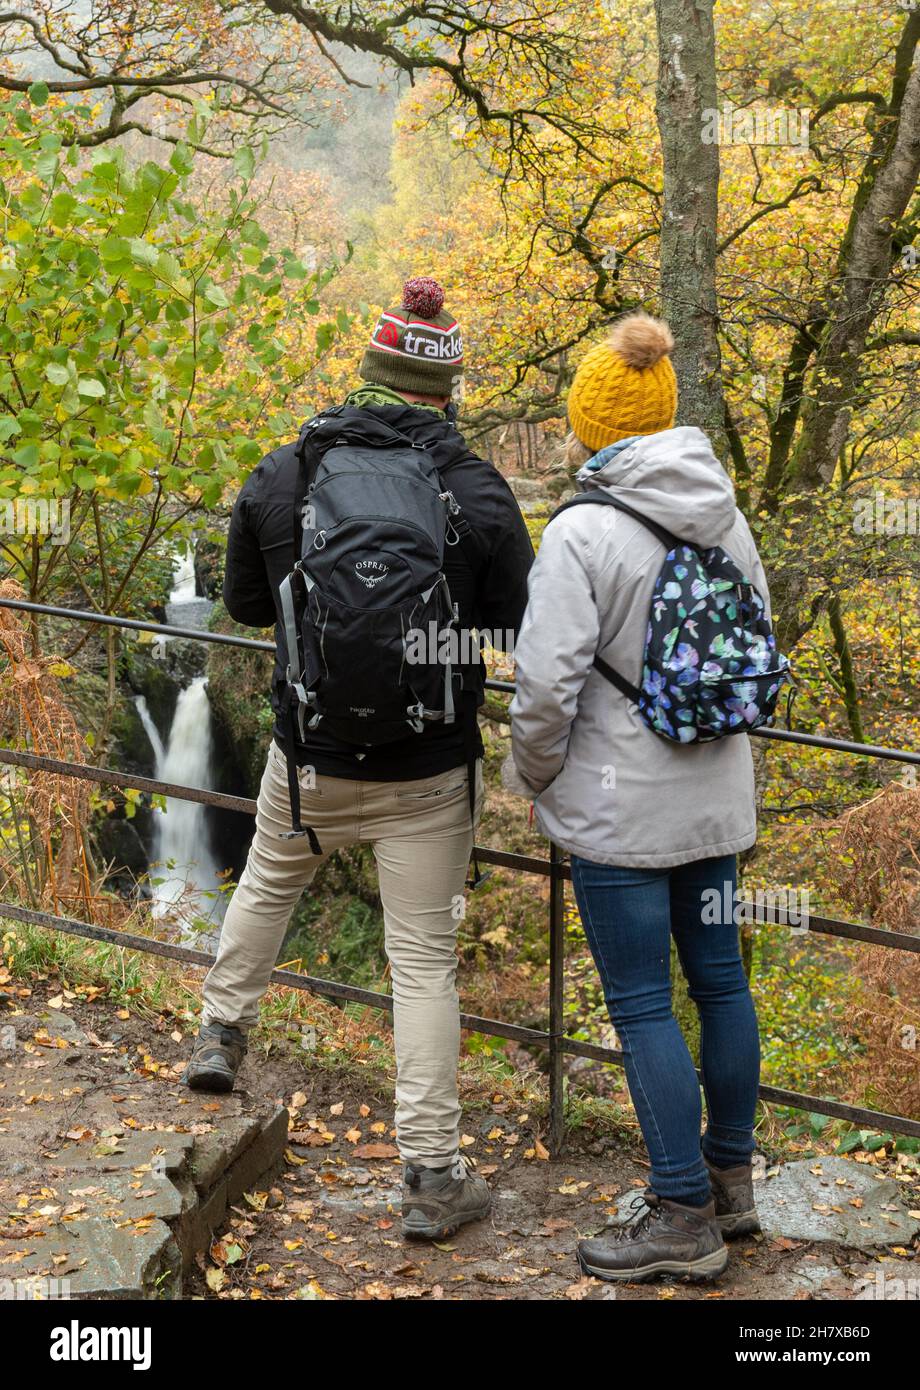 Visiteurs, jeunes couples, regardant la chute d'eau d'Aira Force dans le parc national de Lake District, Cumbria, Angleterre, Royaume-Uni, pendant l'automne ou novembre Banque D'Images